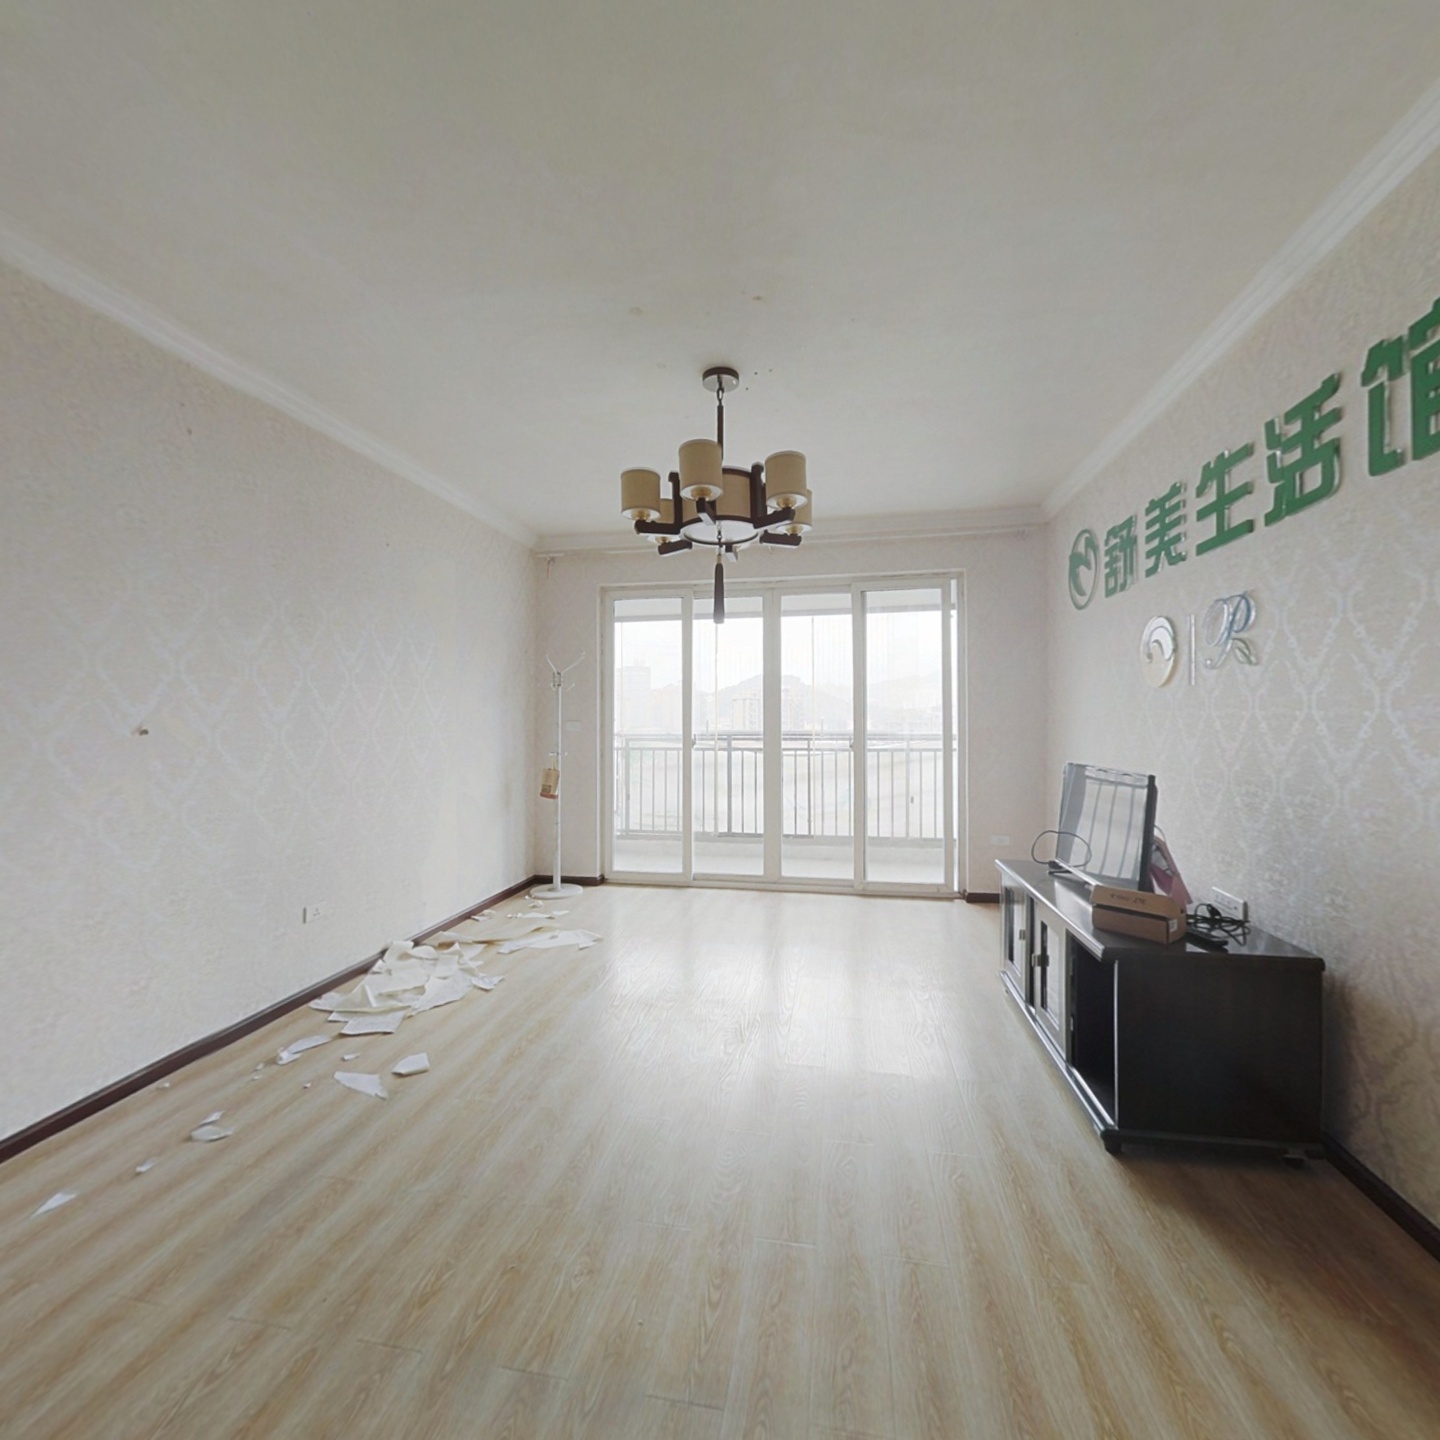 悦景新城 电梯房 产权满2年无贷款 已补土 随时过户